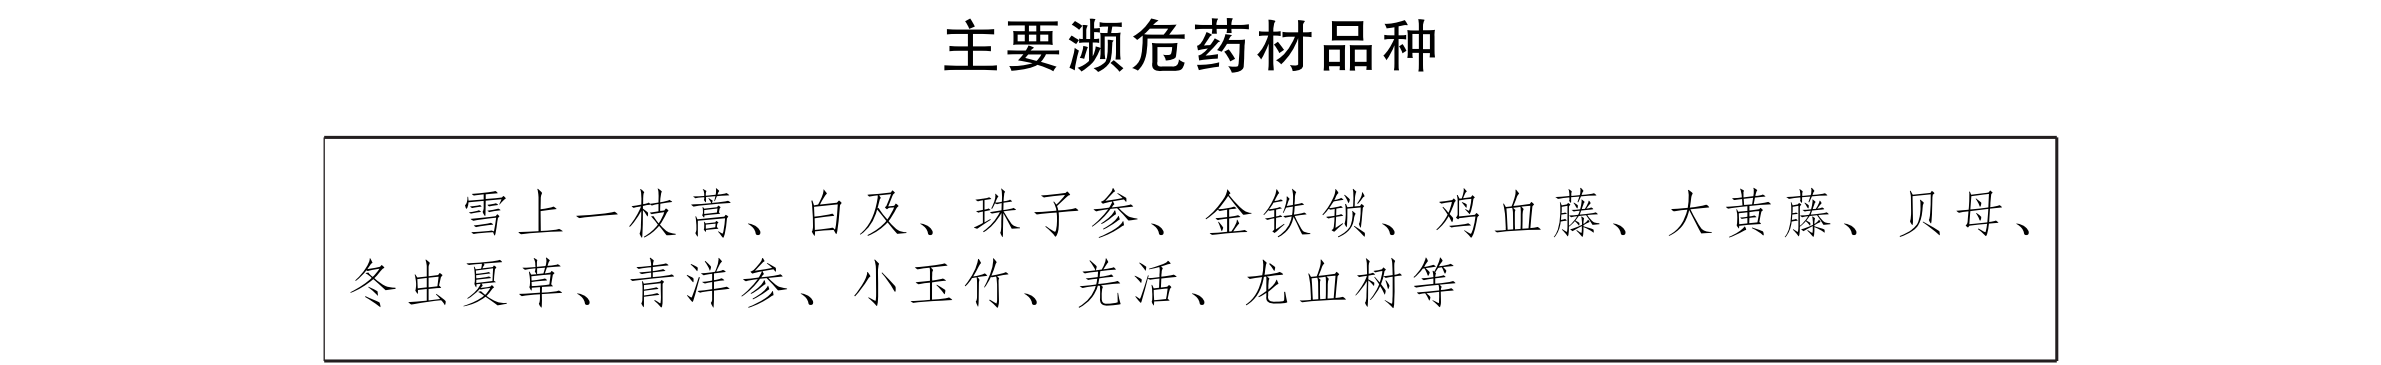 云南省人民政府办公厅关于贯彻落实中药材保护和发展规划(2015—2020年) 的实施意见_05.png